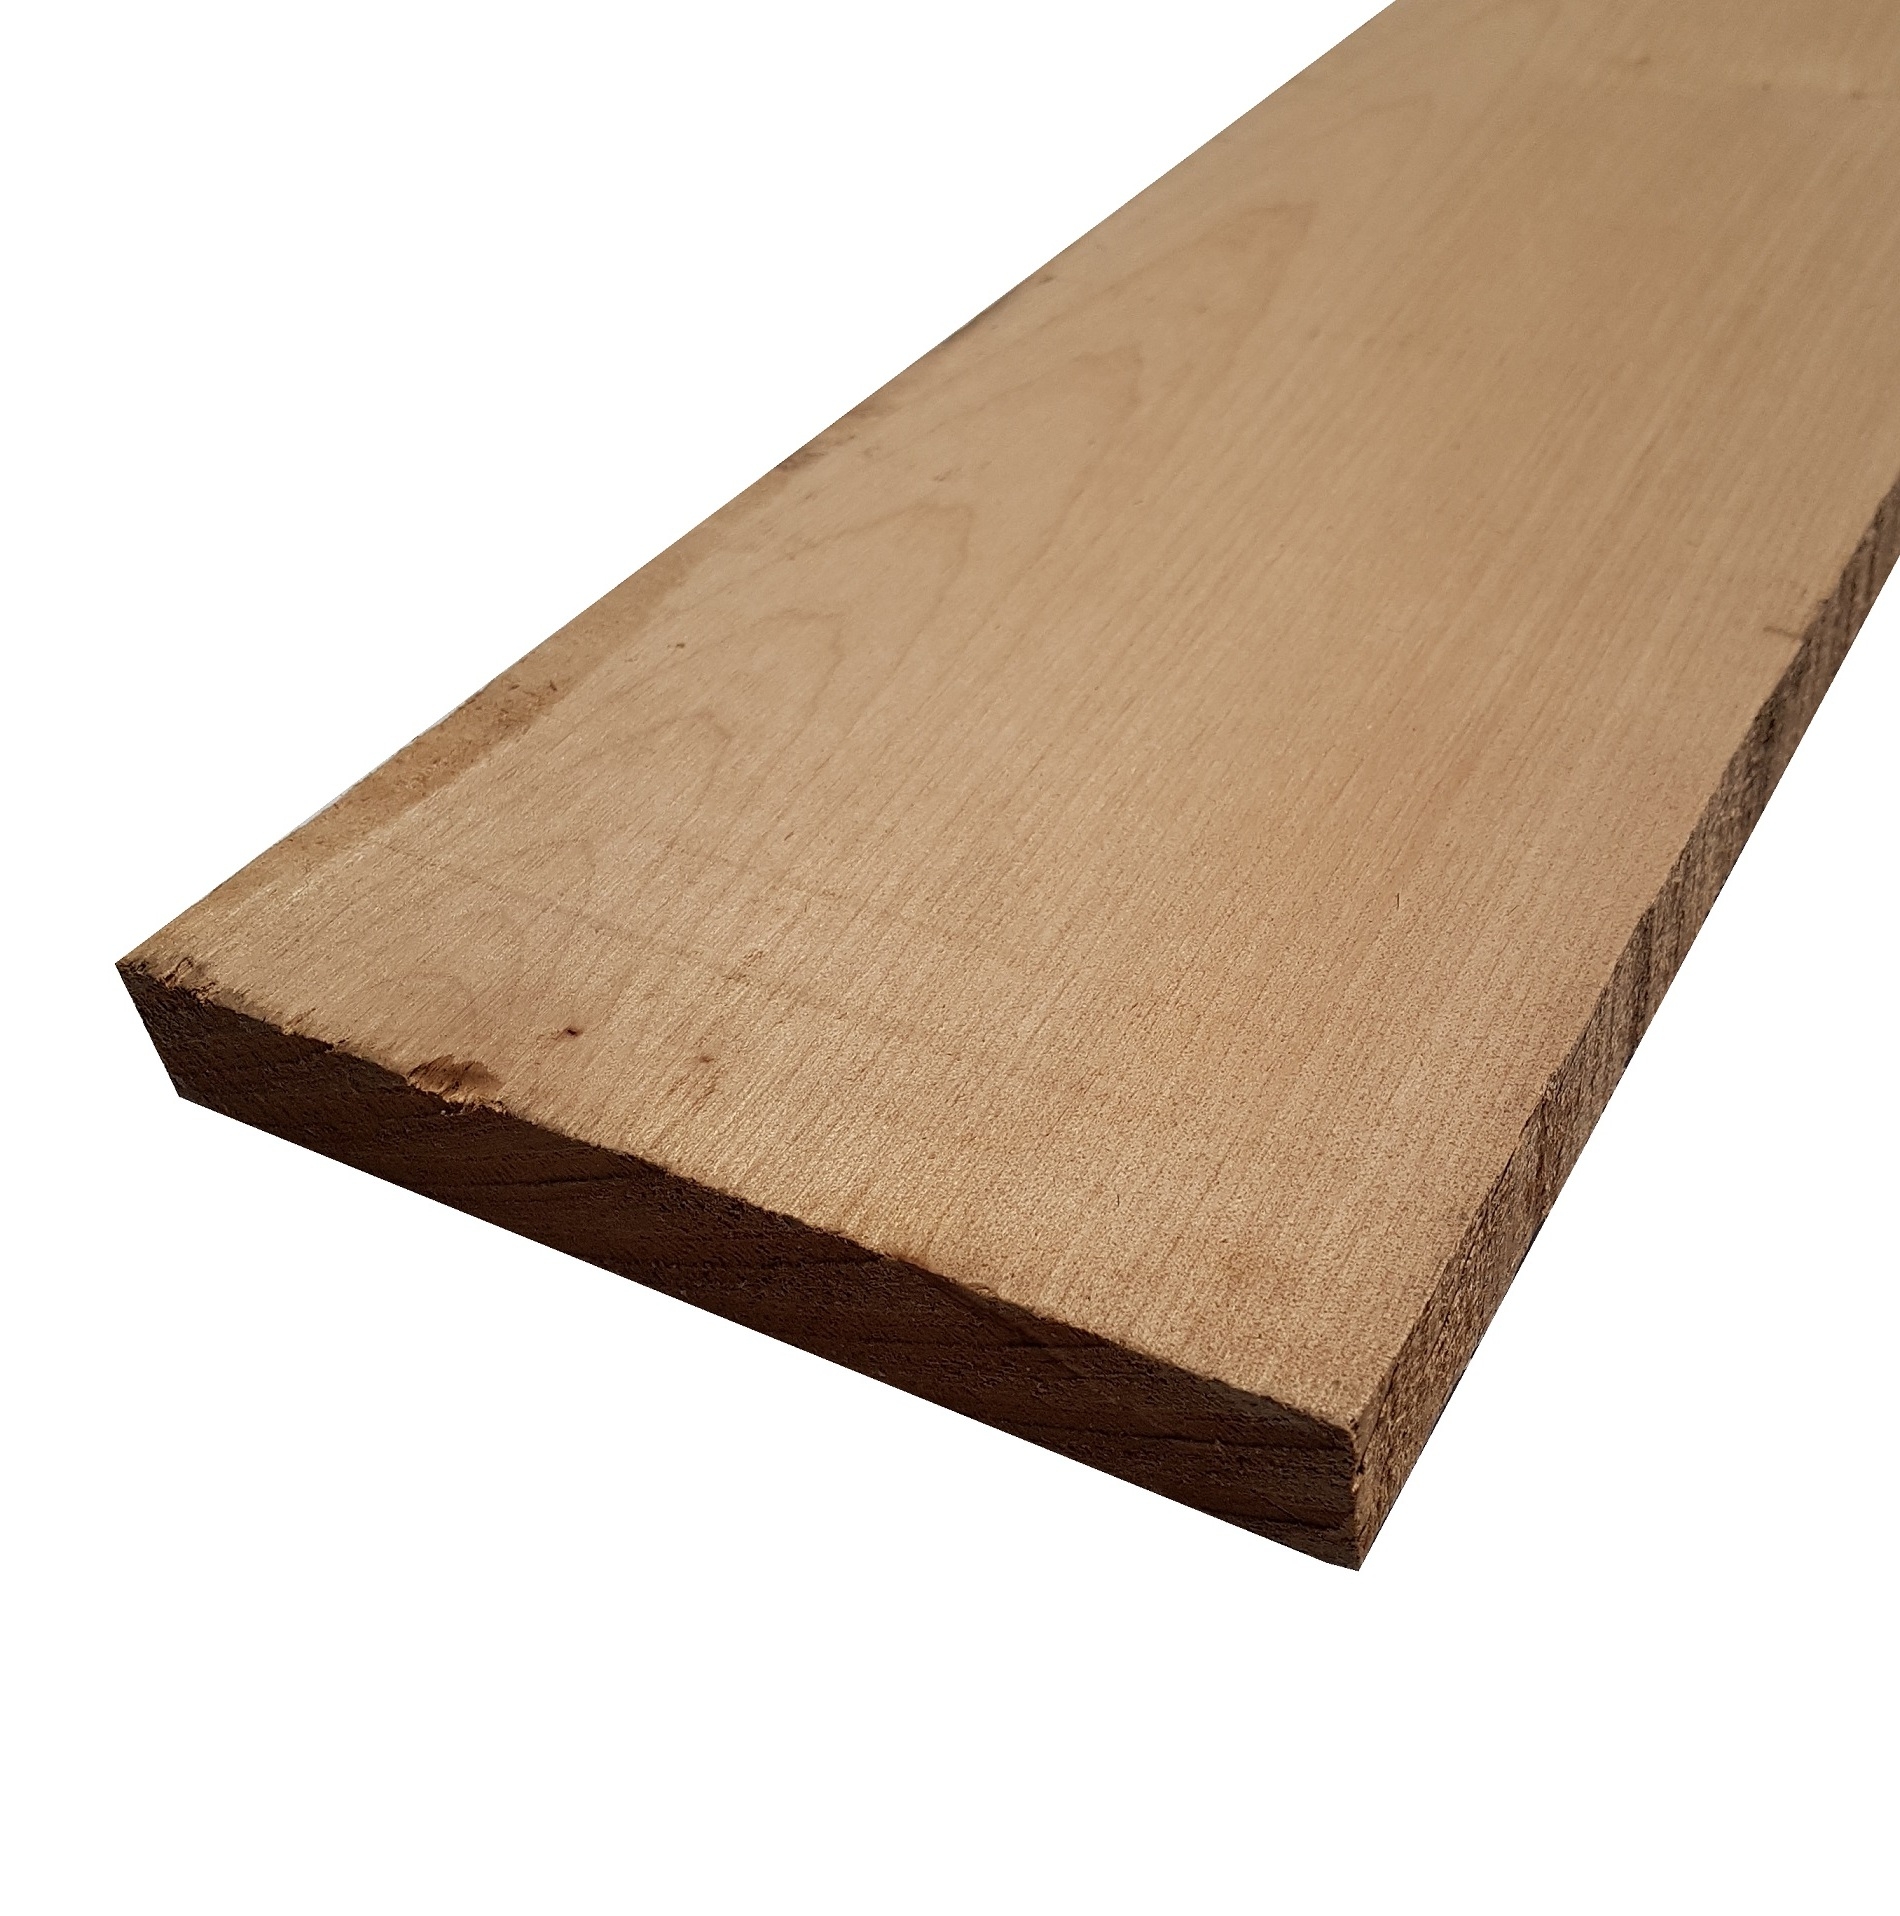 Tavola legno di Acero Pacific Coast Maple Calibrato refilato grezzo mm 24 x 160 x 2100